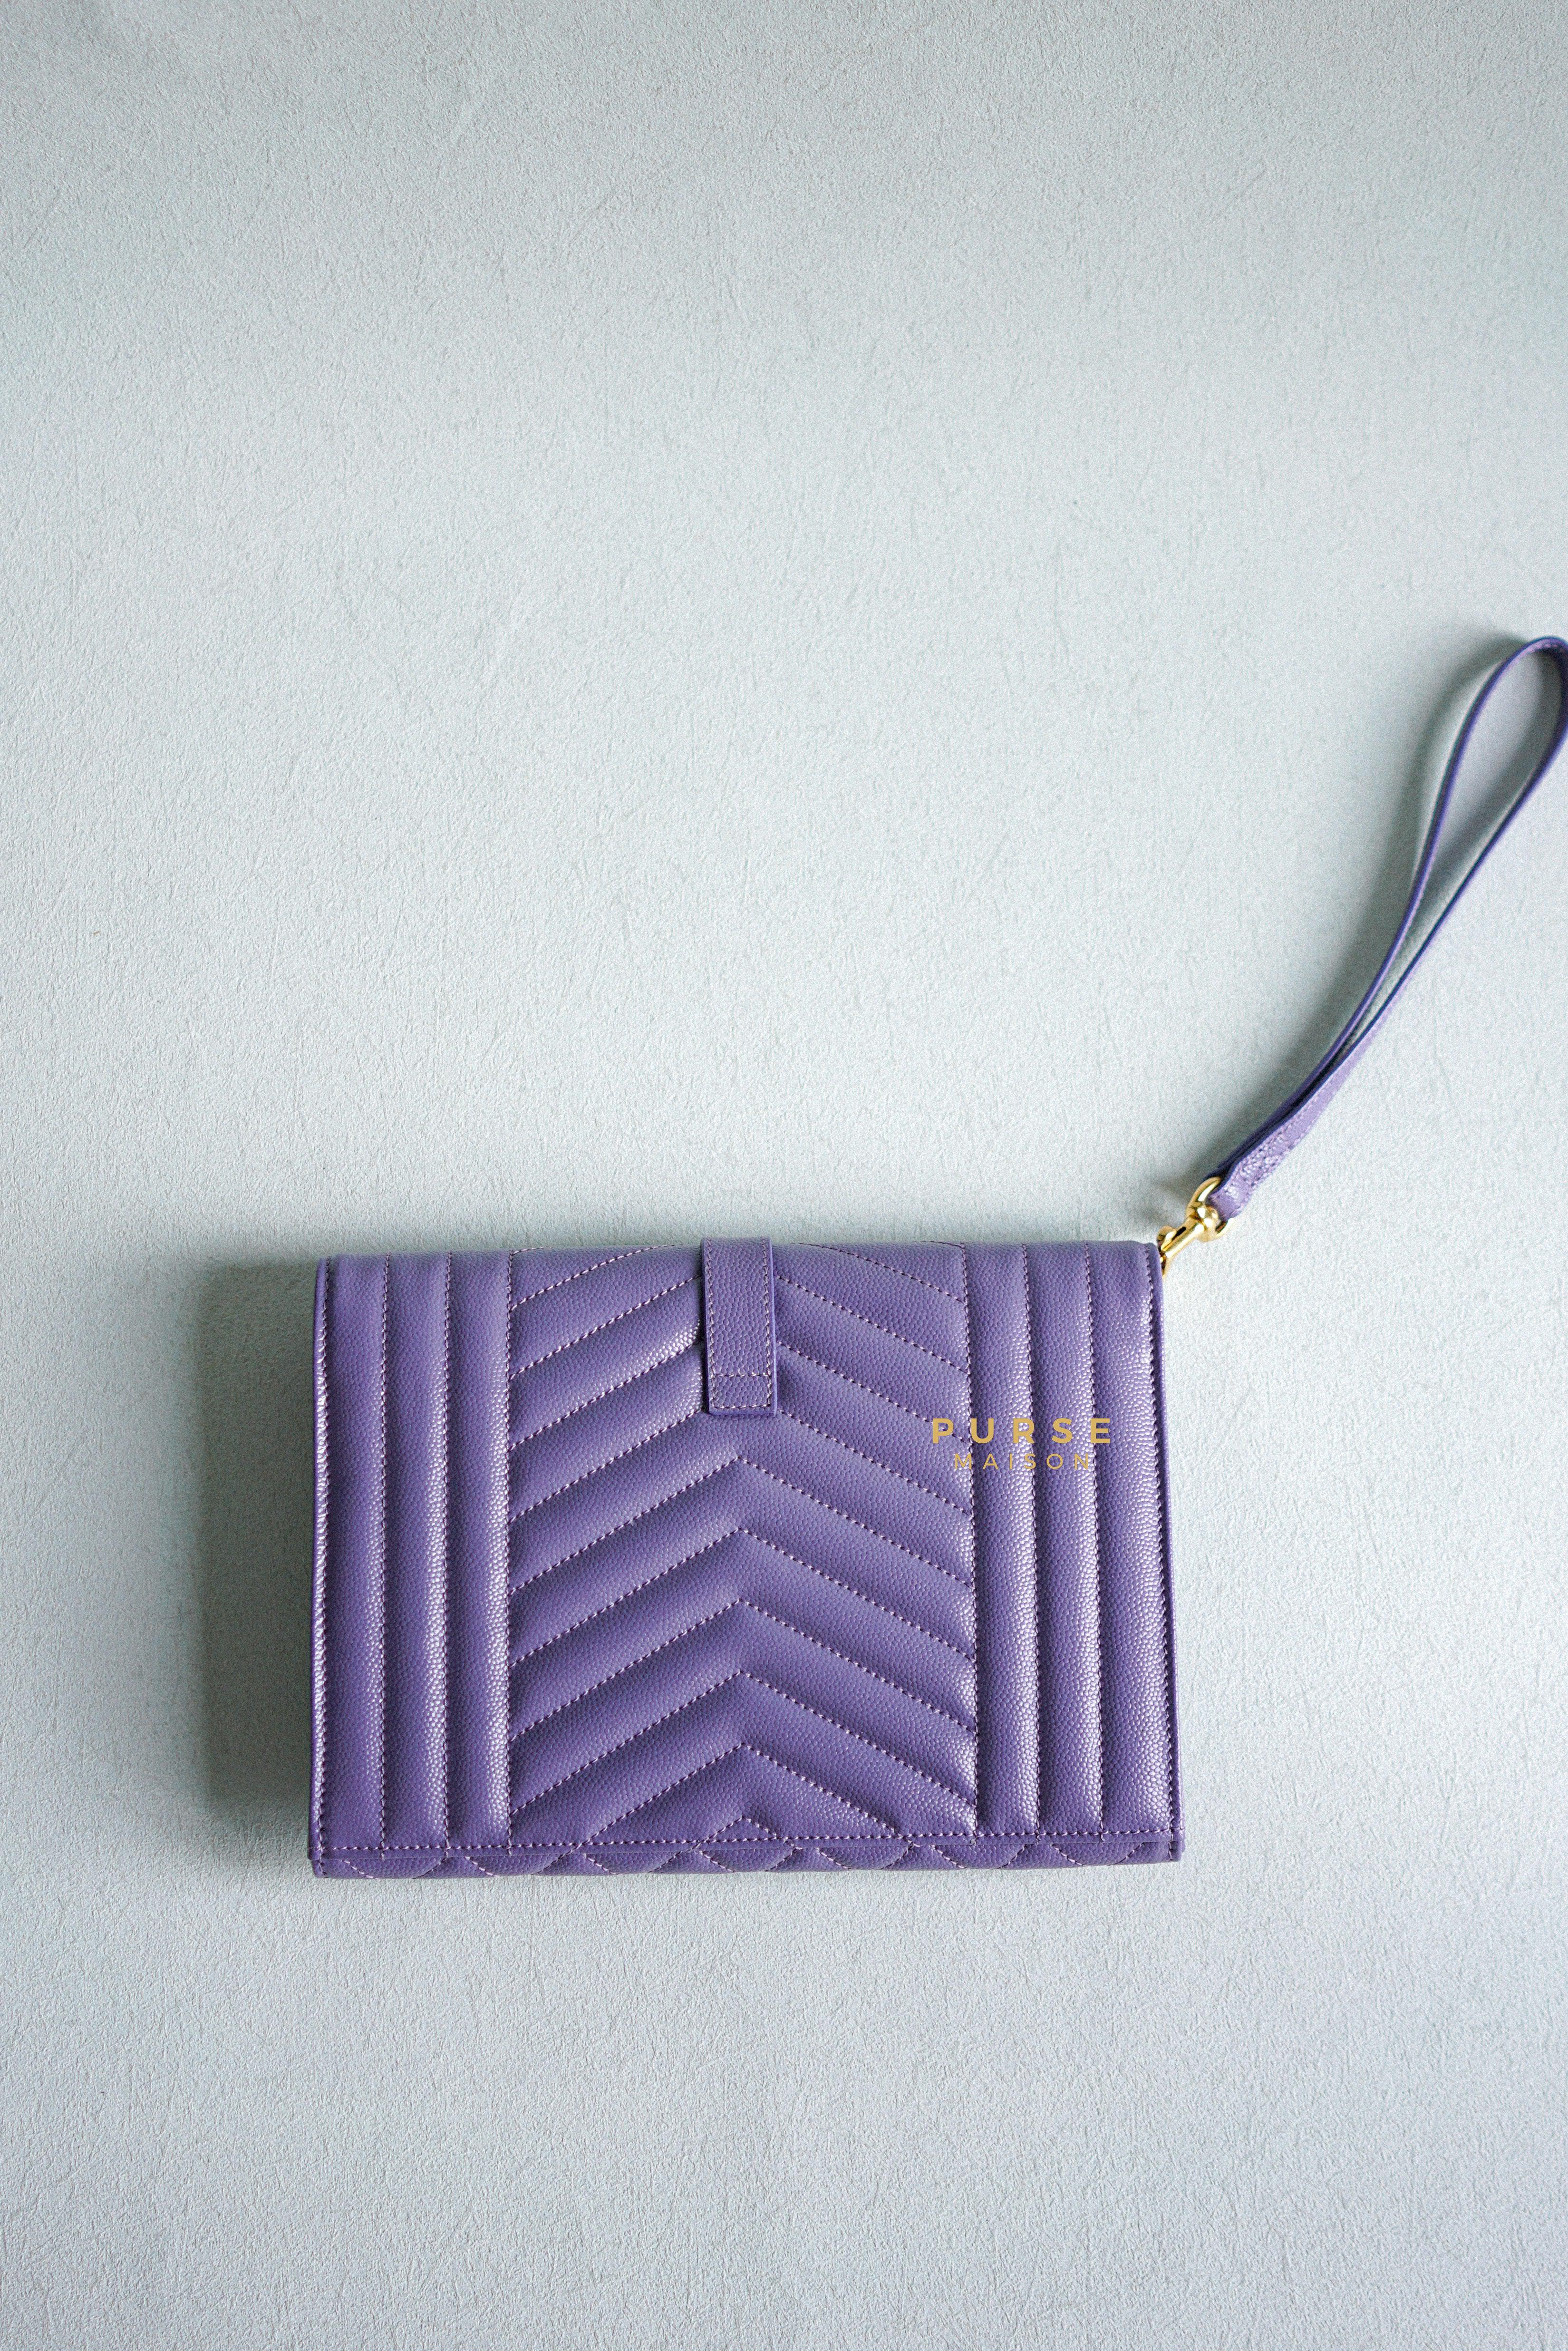 YSL Envelope Clutch in Mix Matelasse Grain De Poudre Embossed Purple Leather | Purse Maison Luxury Bags Shop